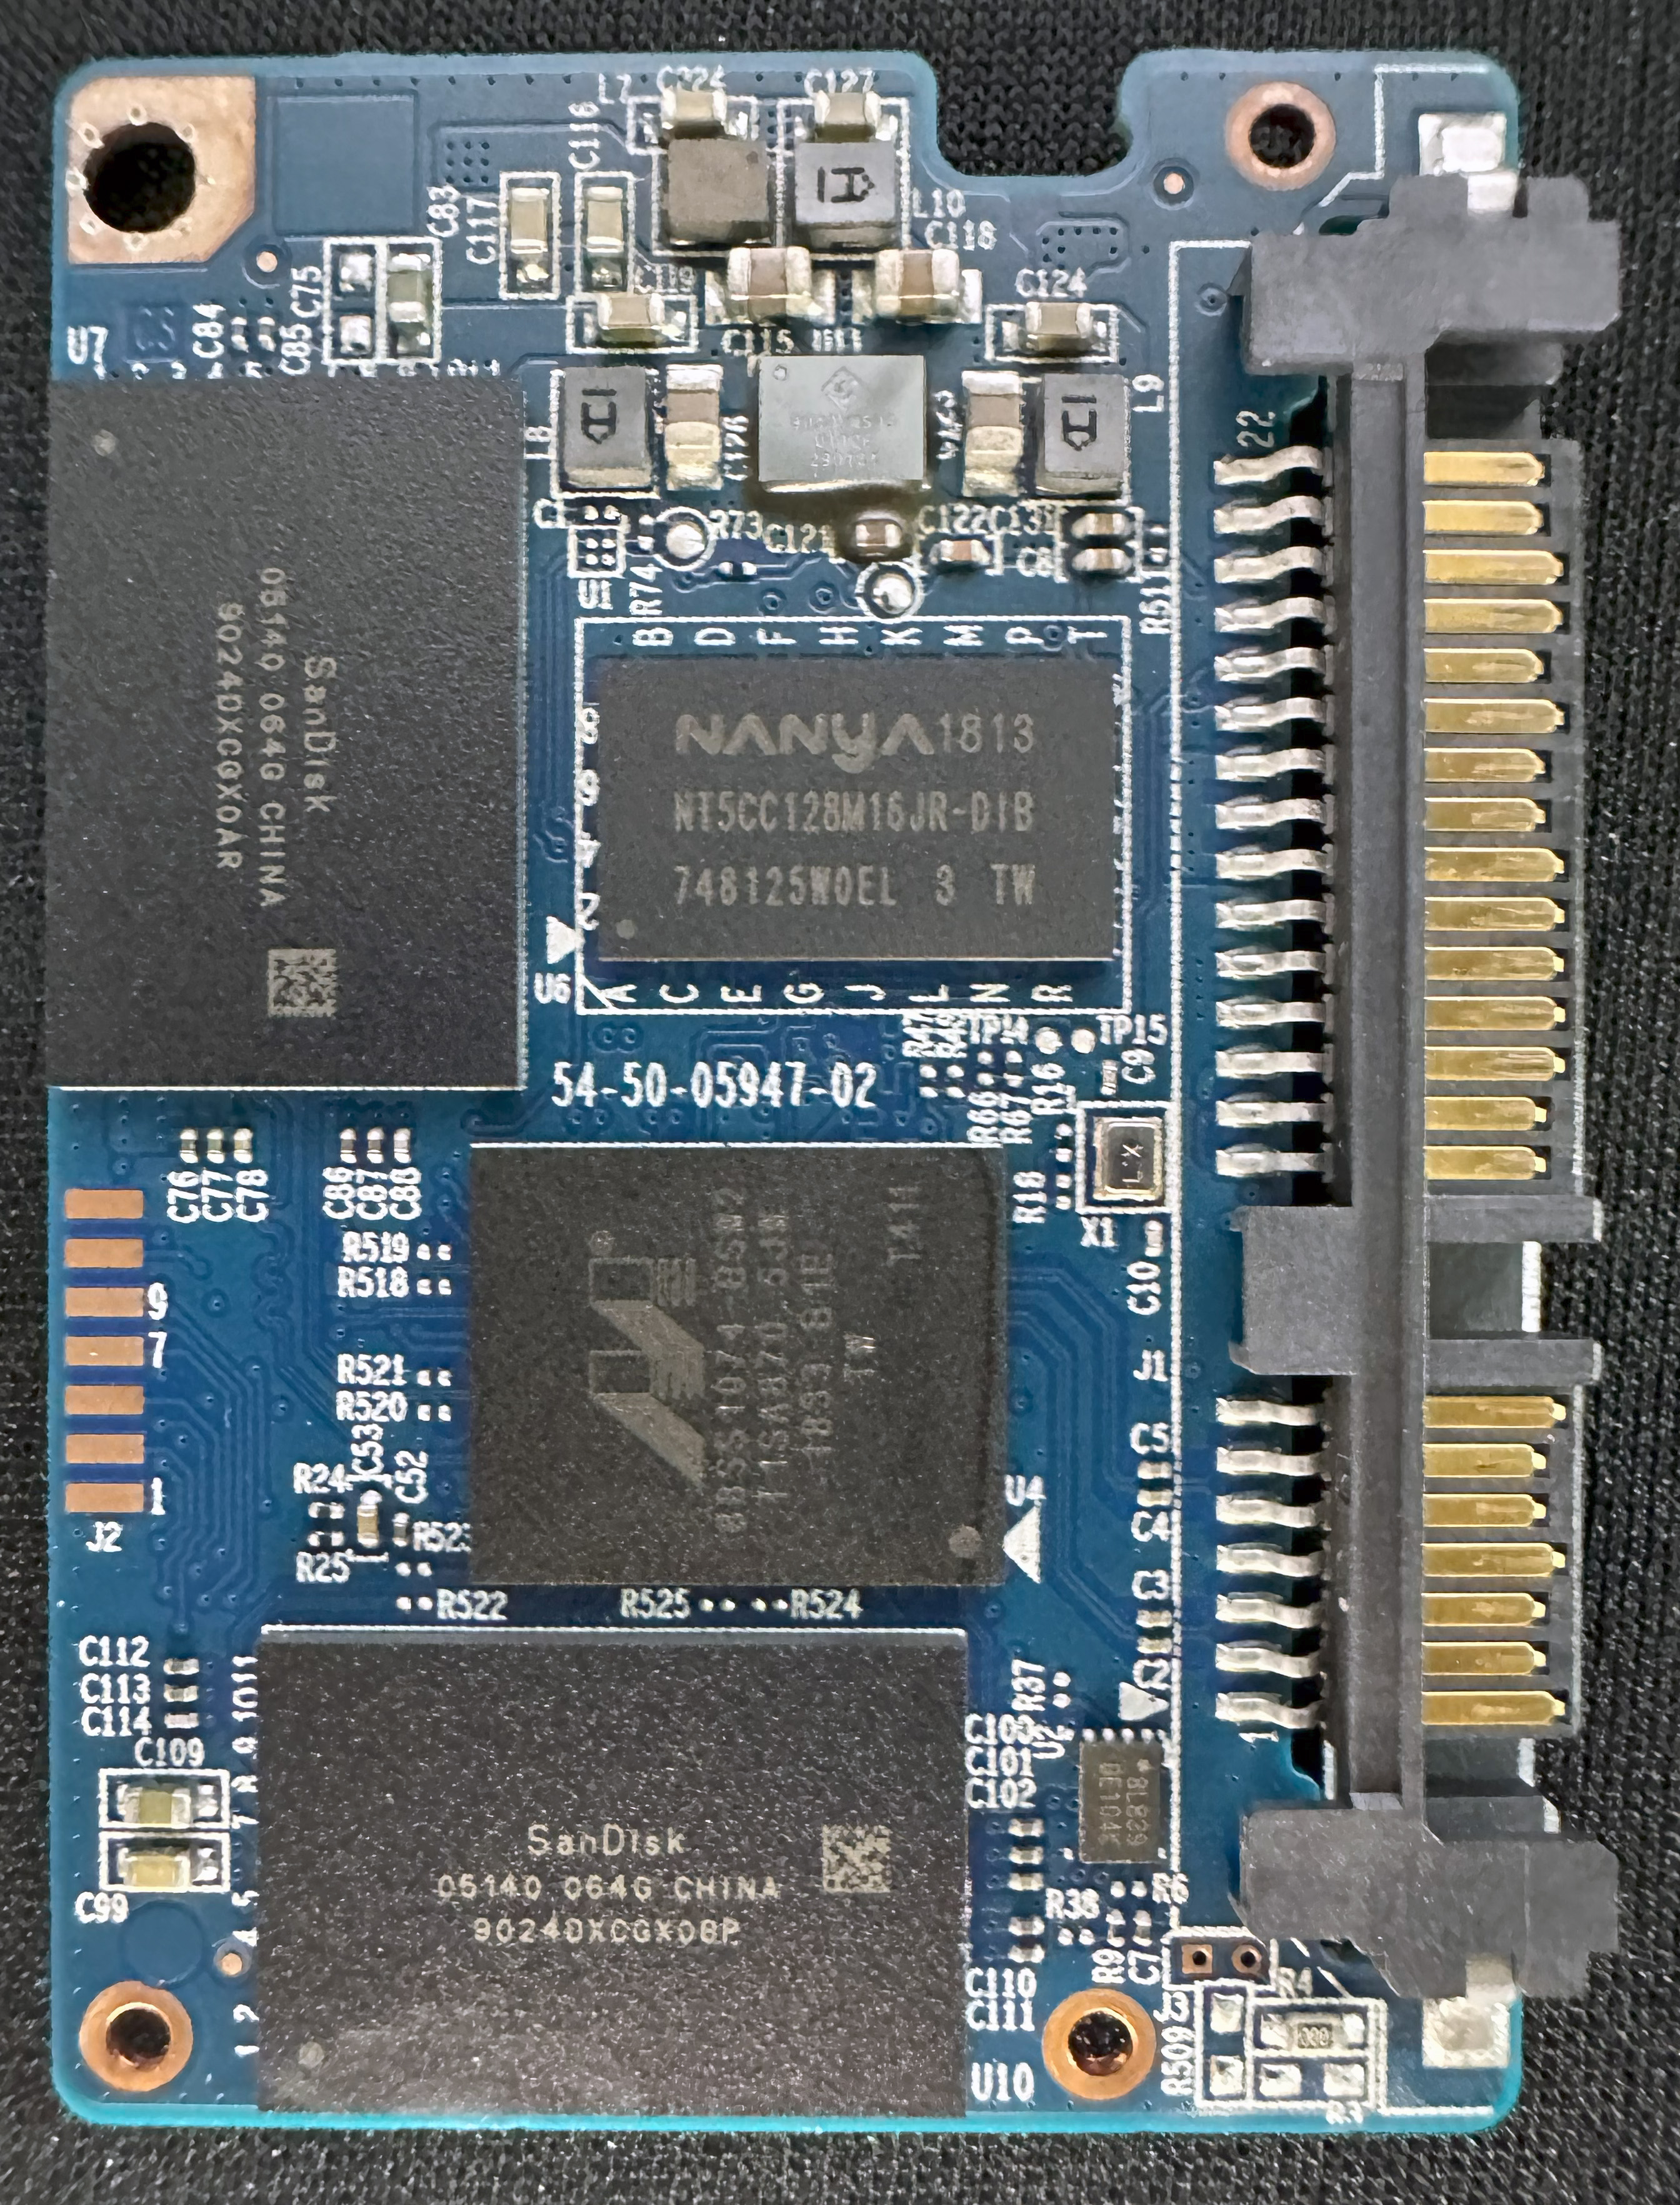 Western Digital Blue 250GB PCB Front (WDS250G2B0A-00SM50 &amp;#124; 54-50-05947-02)